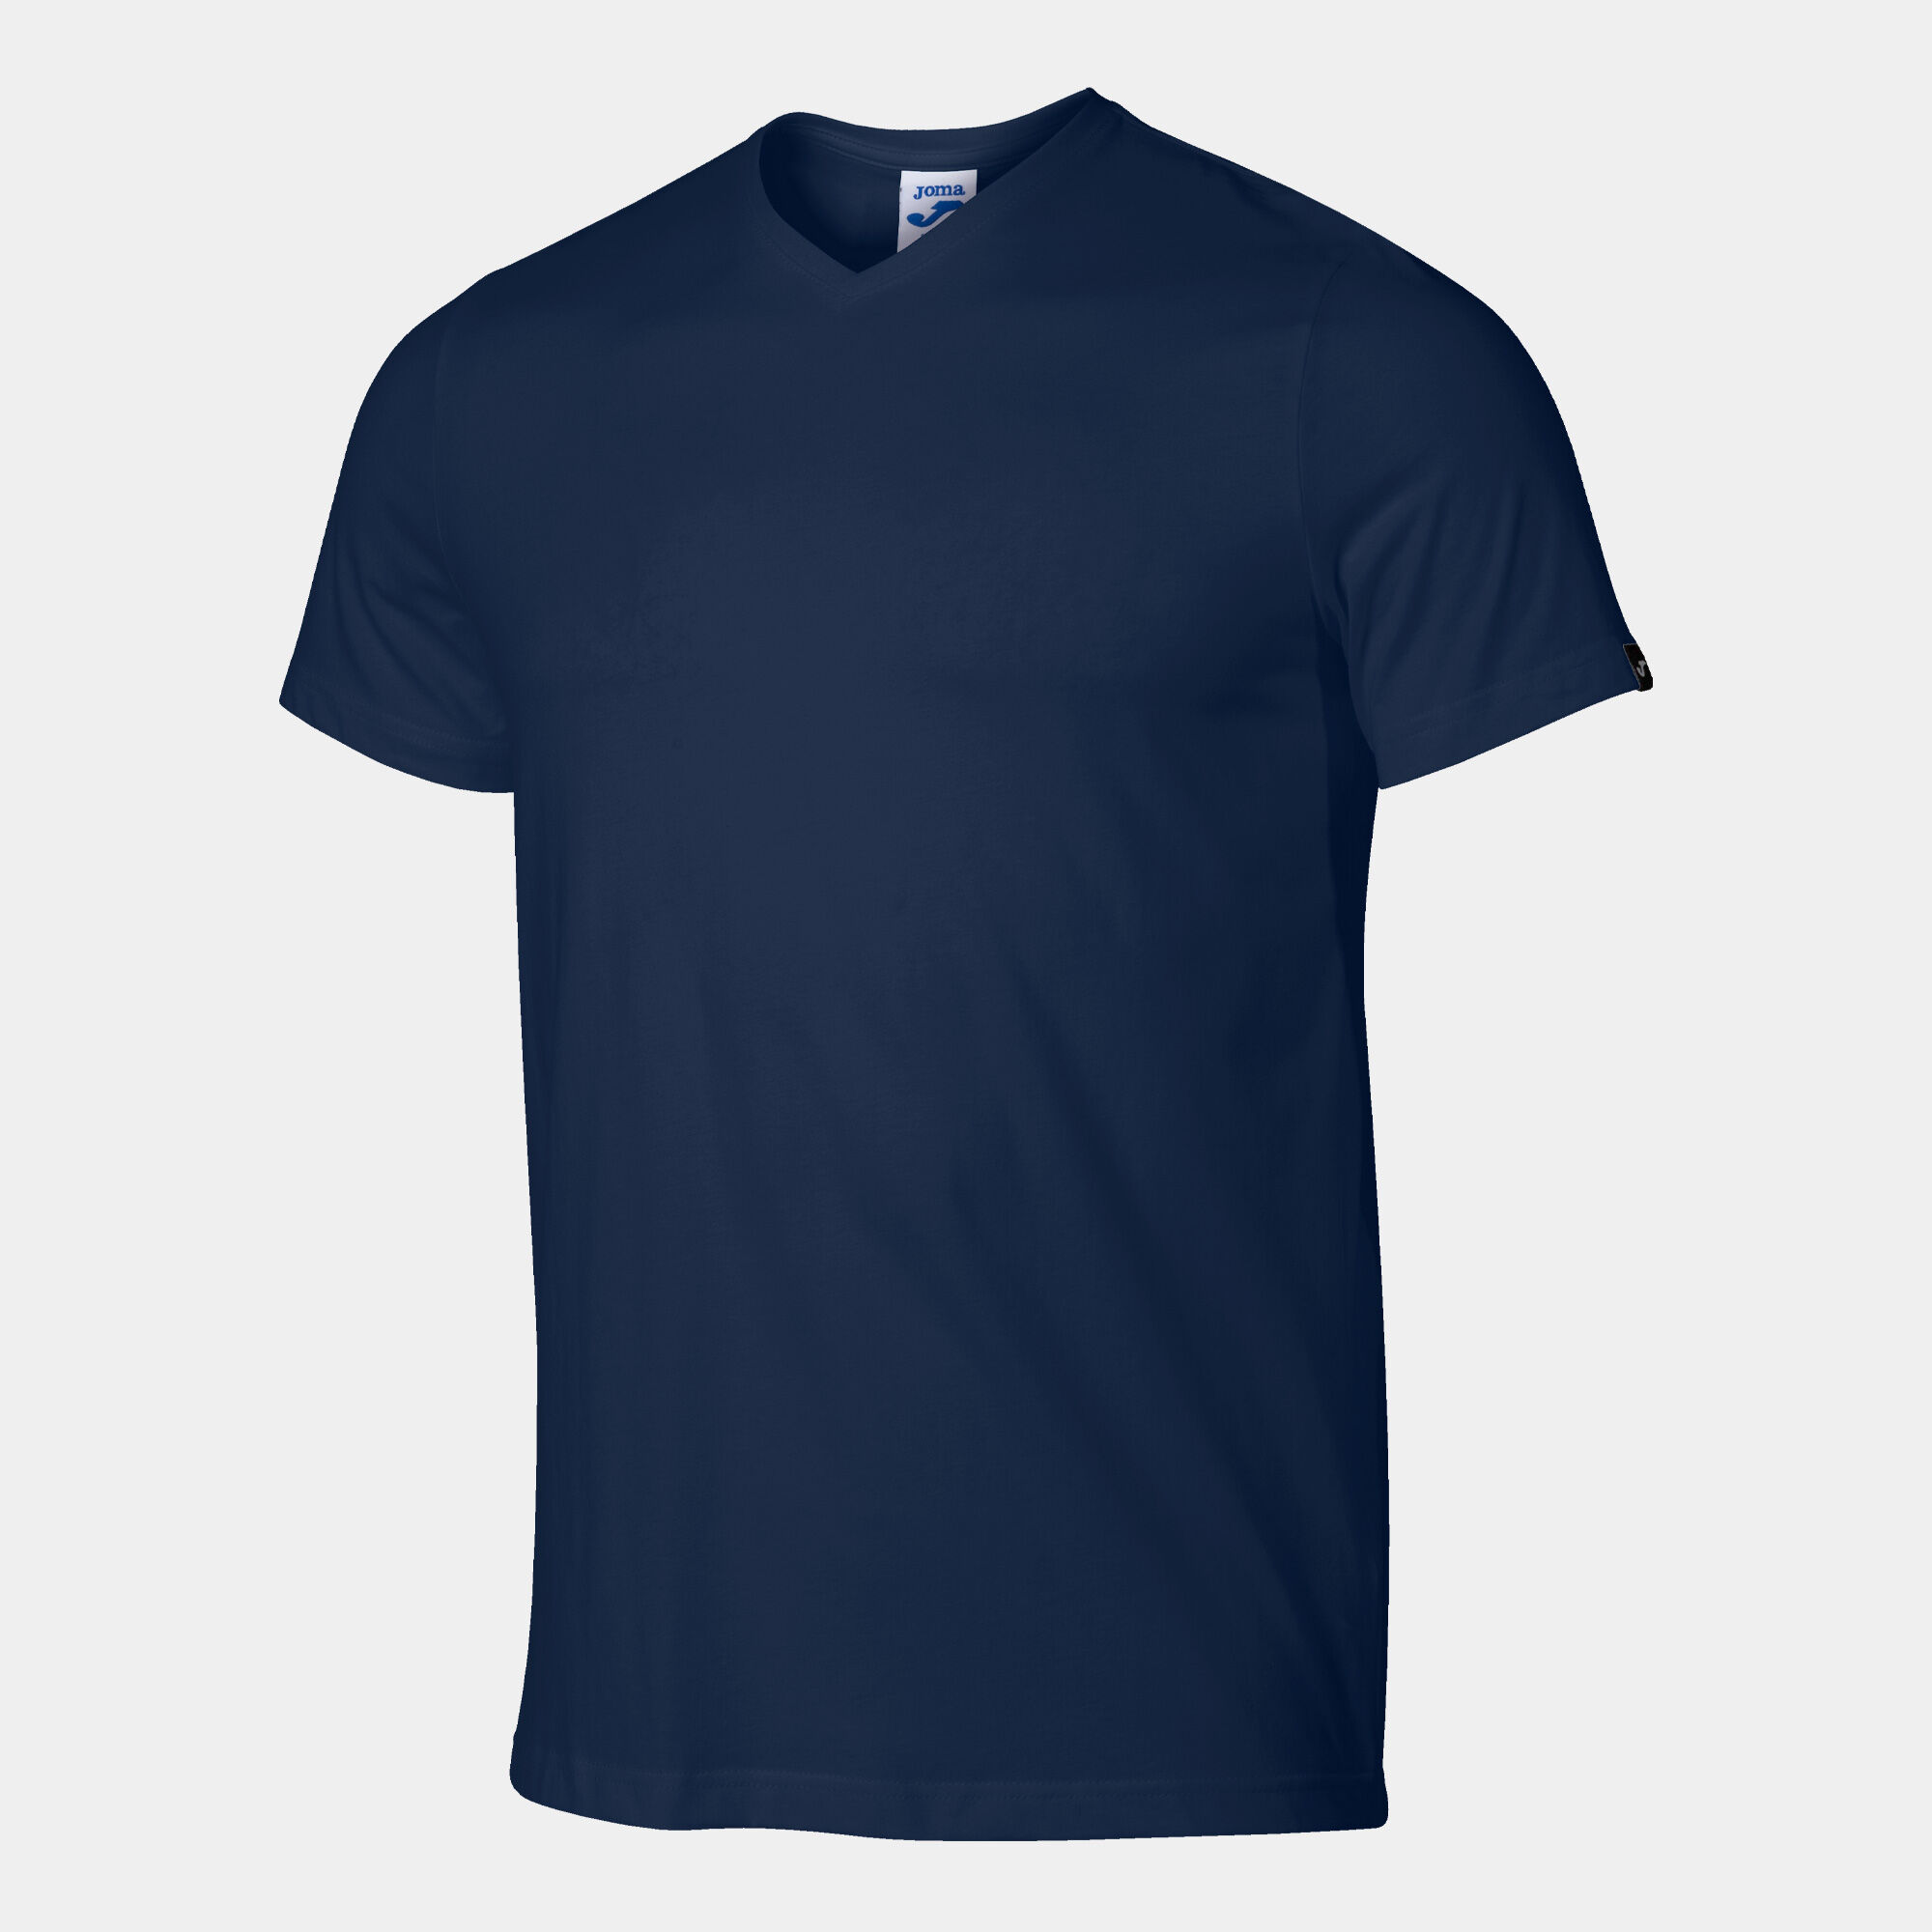 Shirt short sleeve man Versalles navy blue